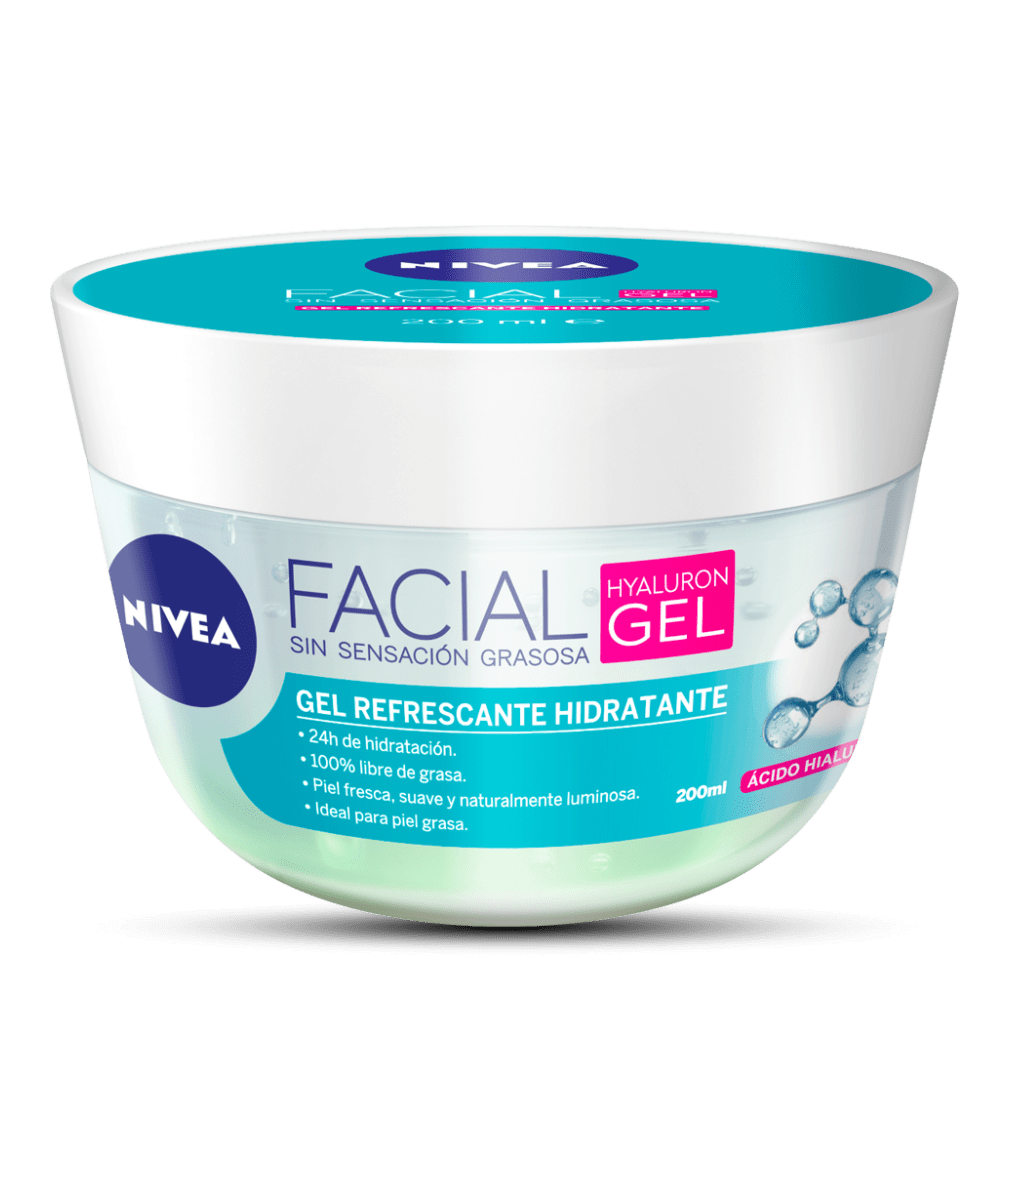 NIVEA Cuidado Facial Hyaluron Gel 